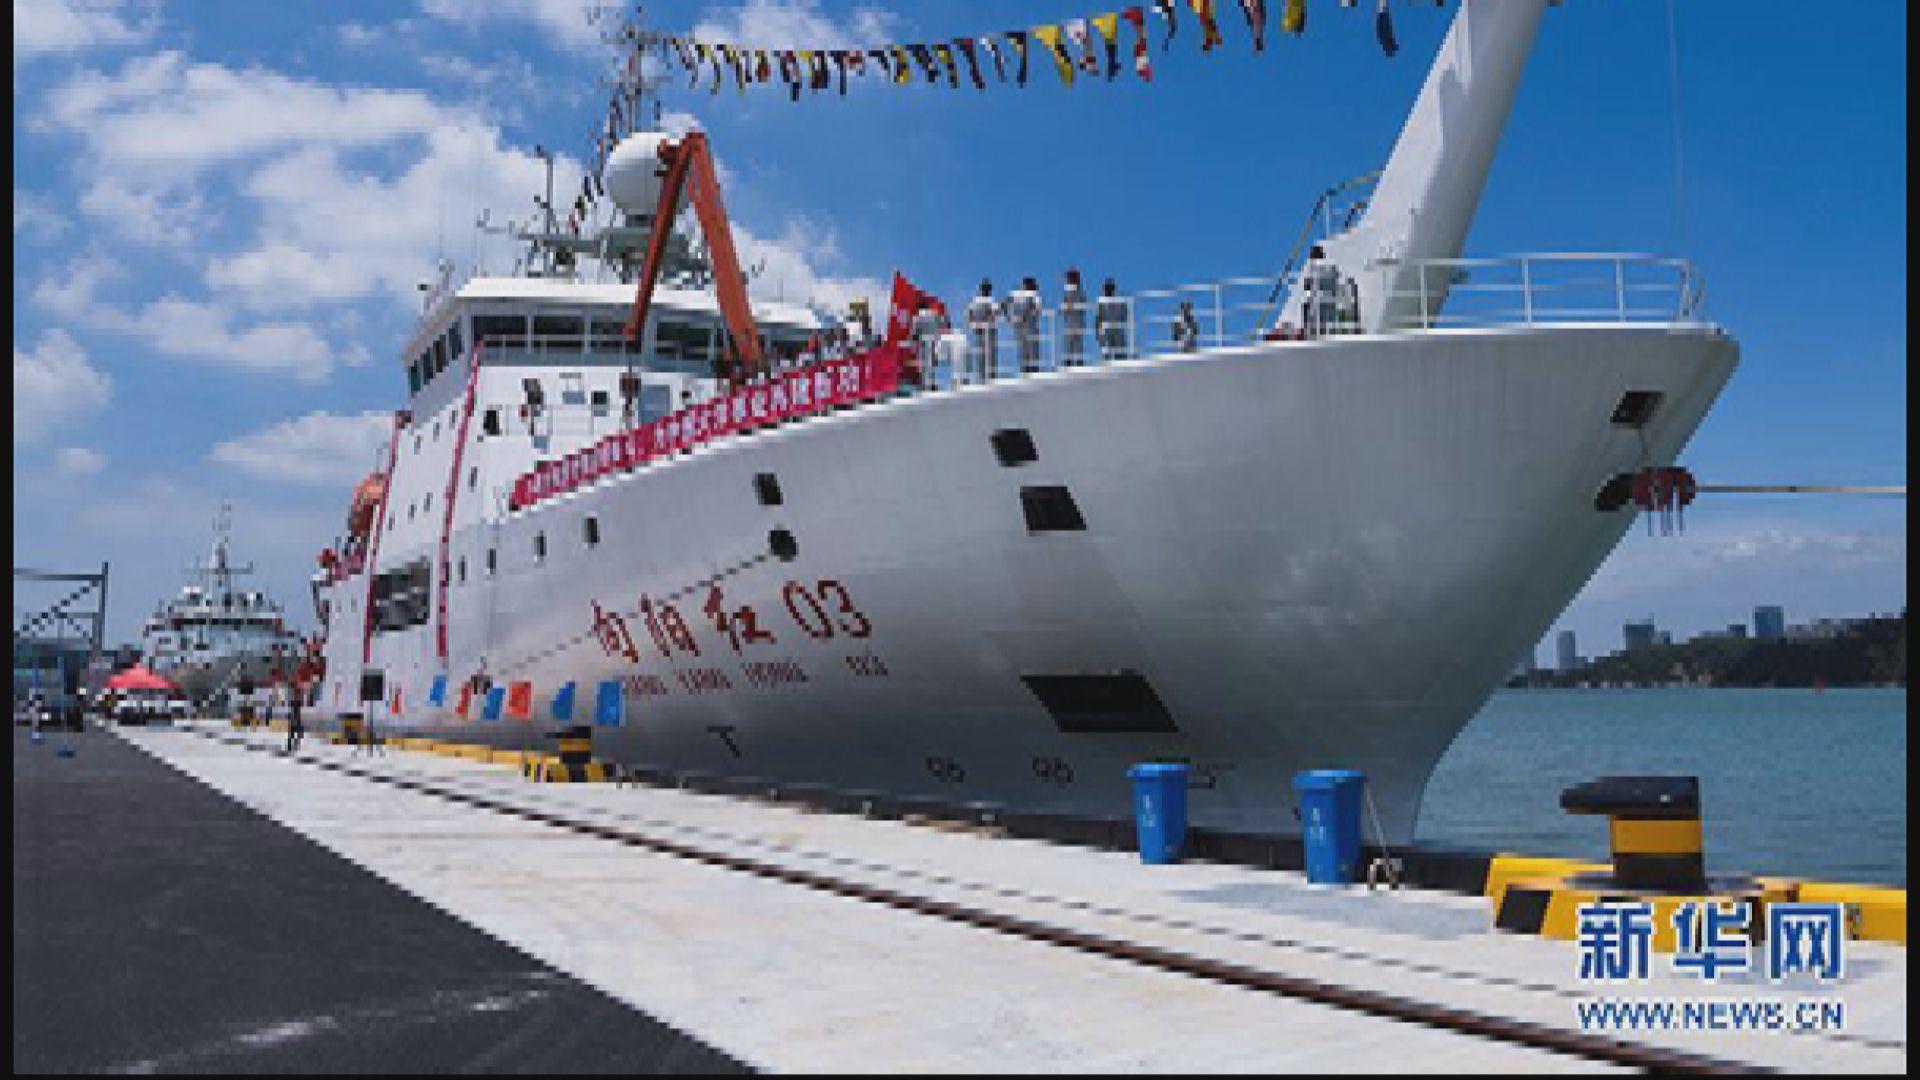 中國科考船「向陽紅03」據報停靠馬爾代夫